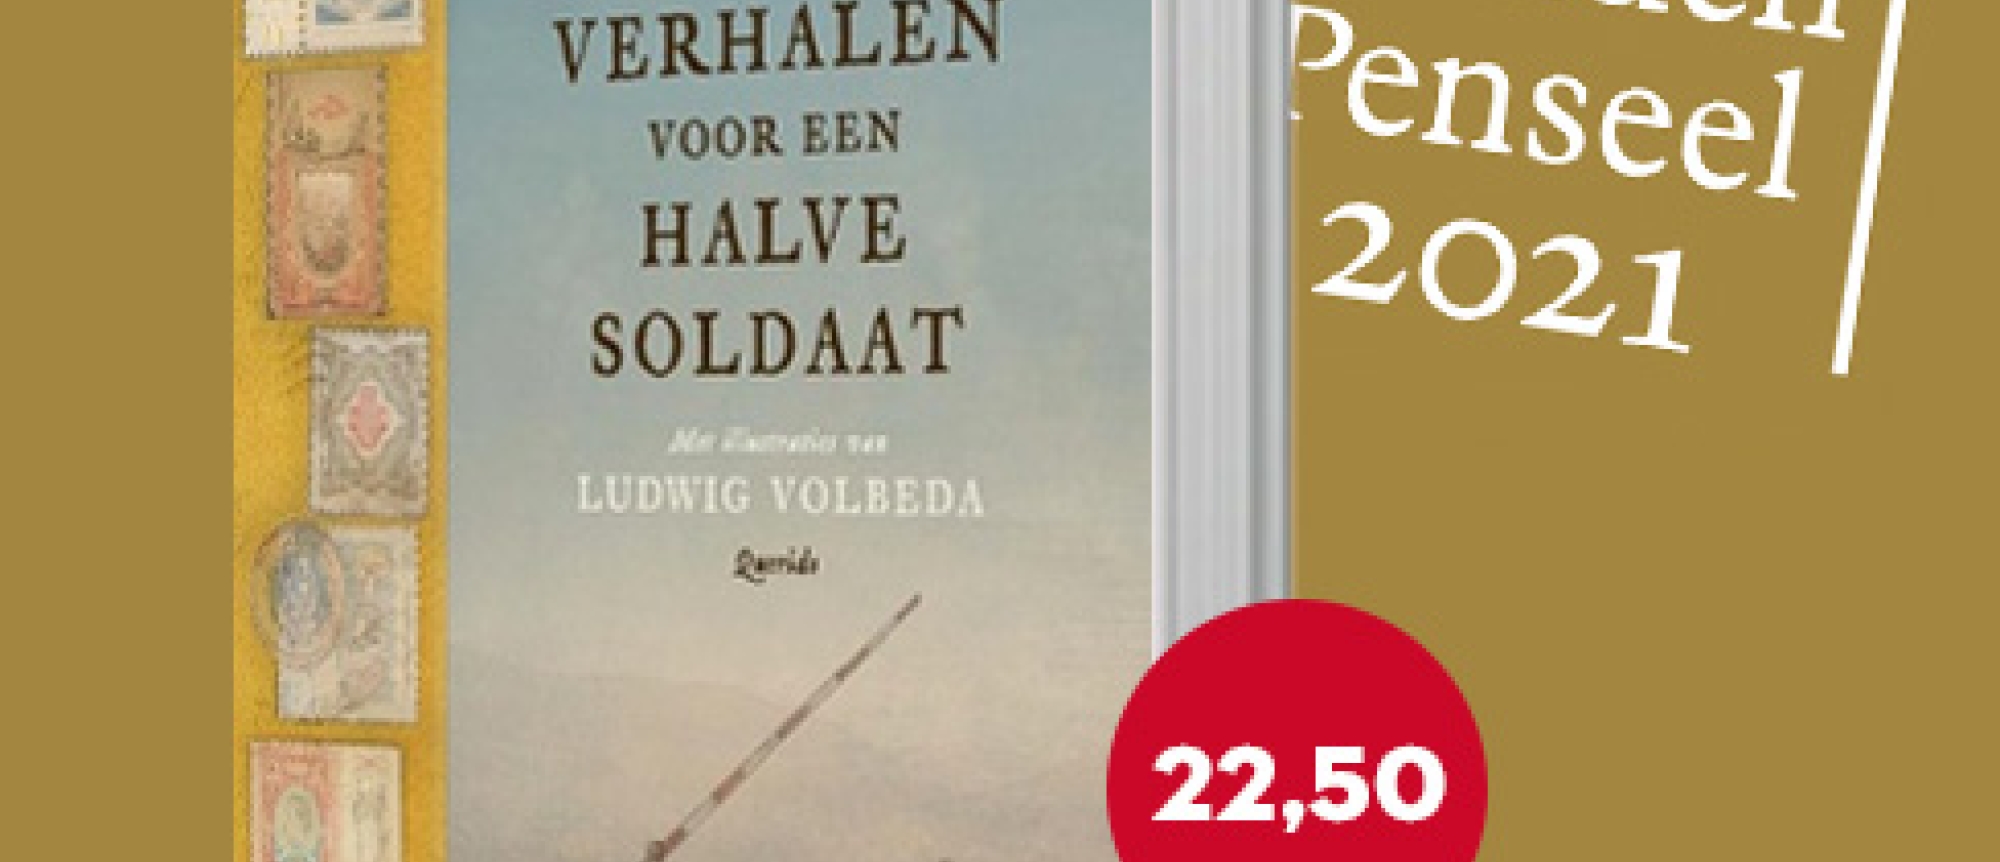 Gouden Penseel-winnaar 'Hele verhalen voor een halve soldaat'